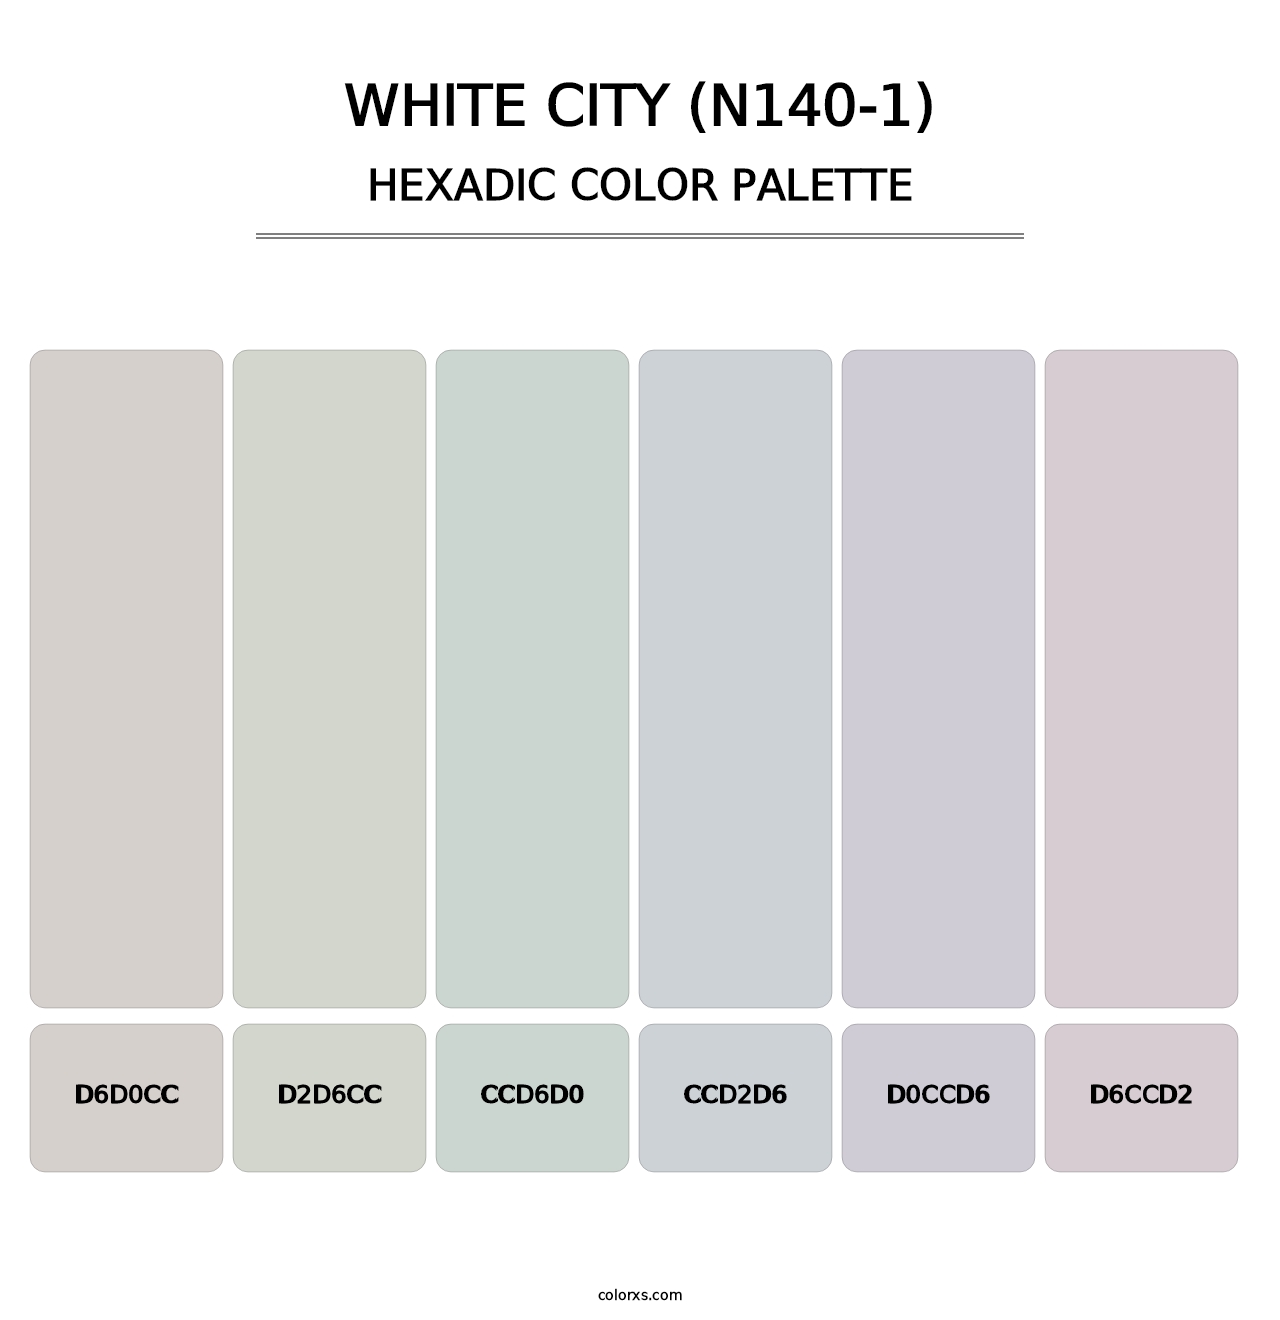 White City (N140-1) - Hexadic Color Palette